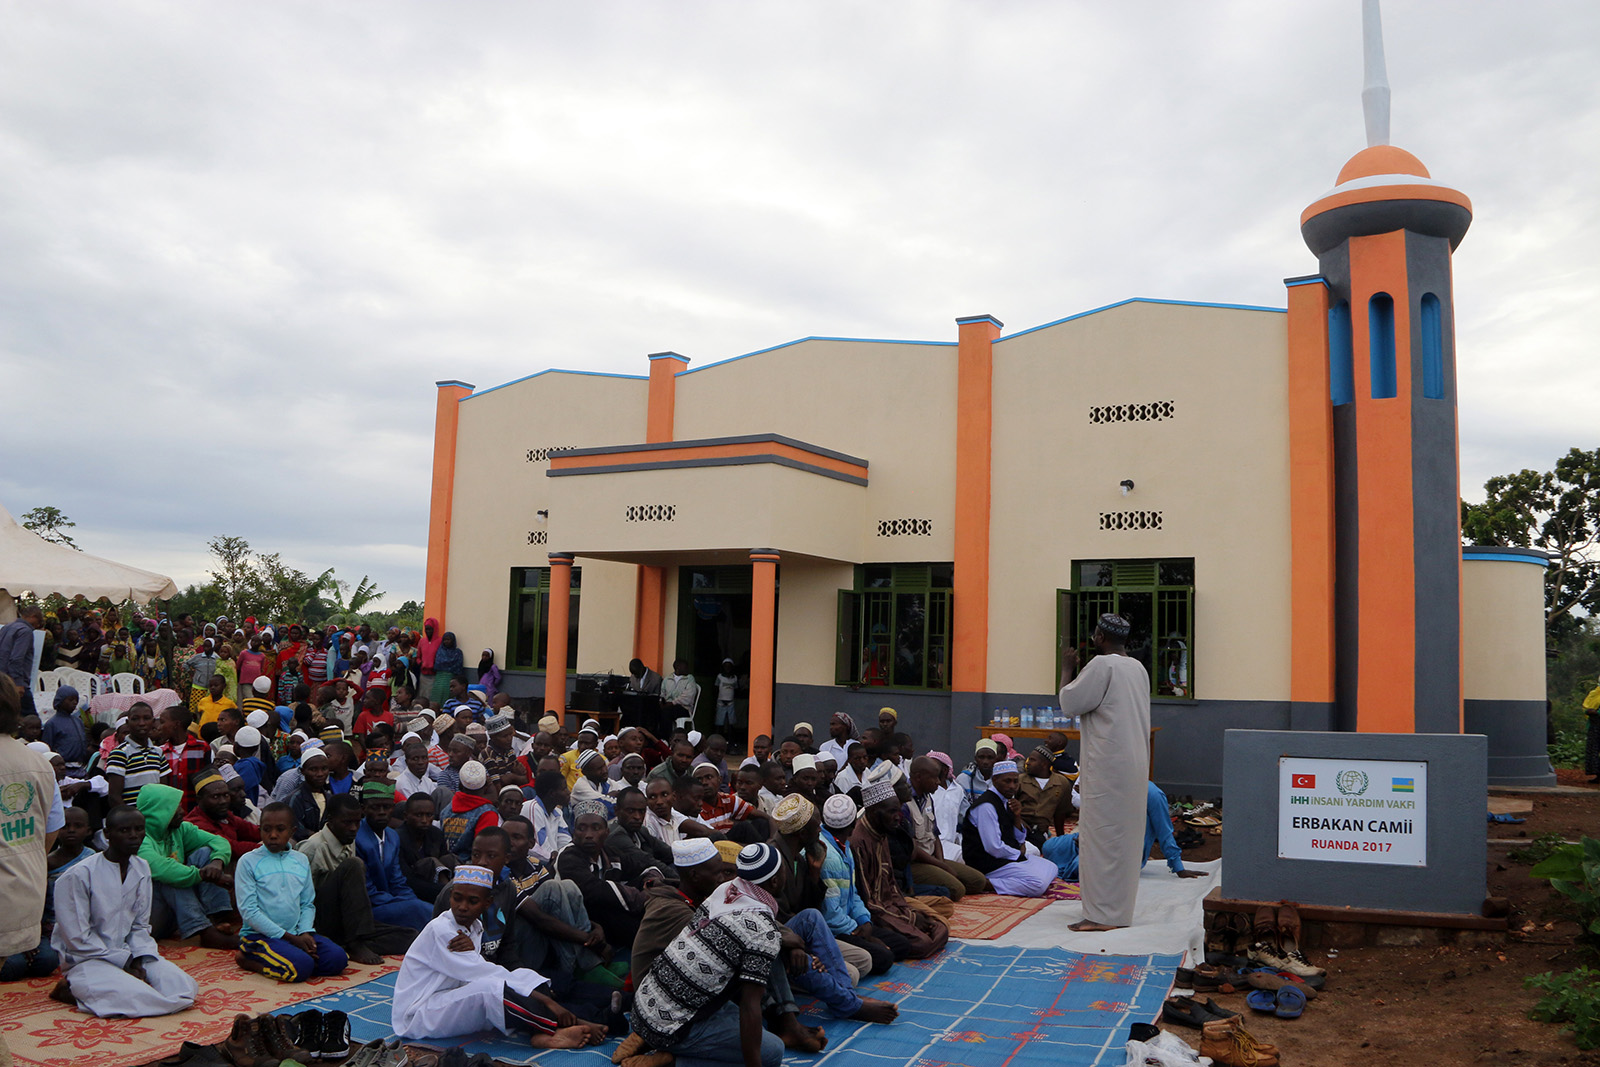 افتتاح جامع أربكان في رواندا